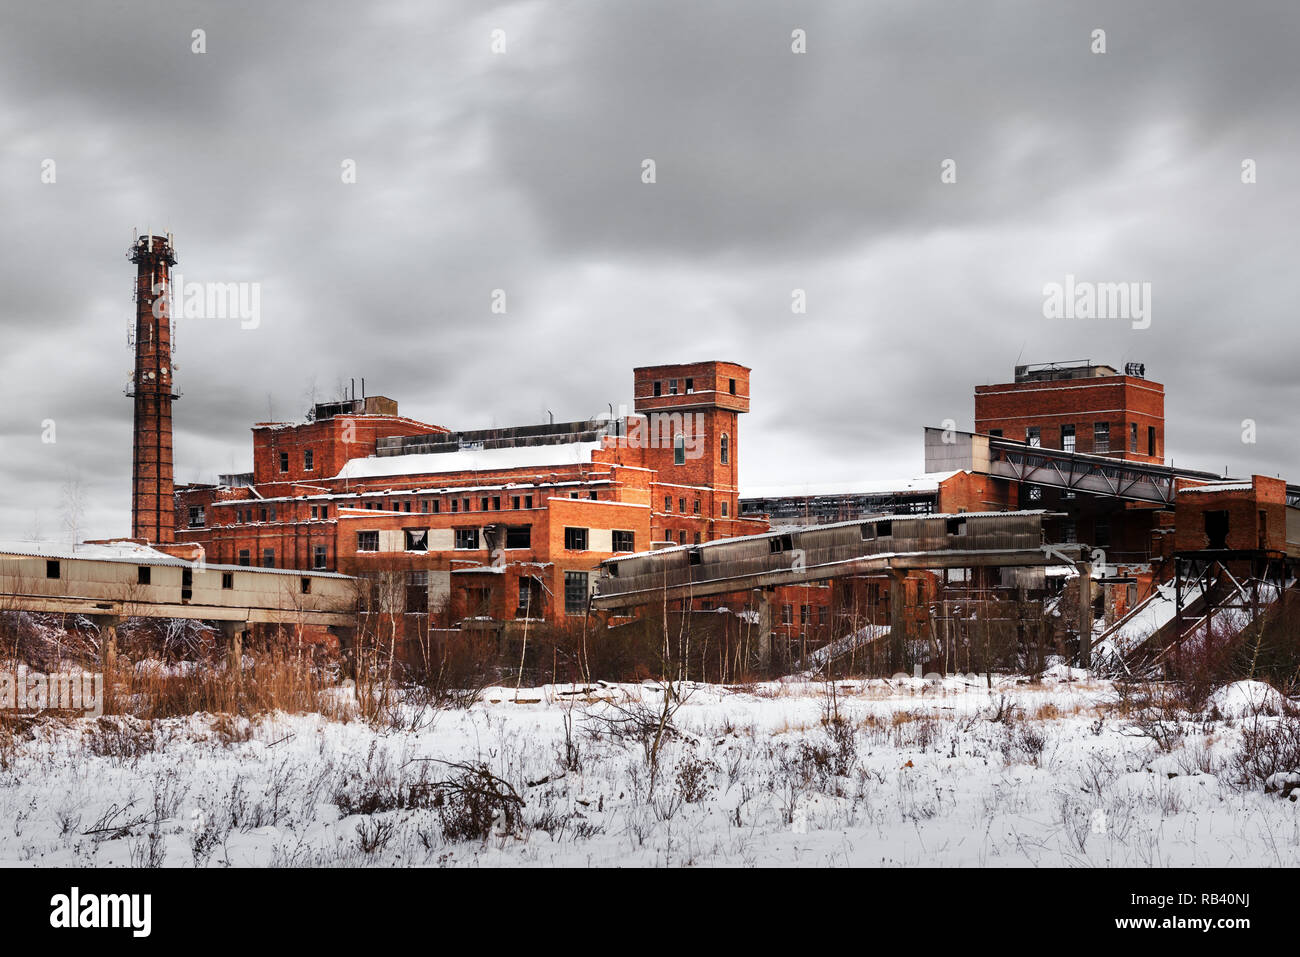 La construction de l'usine en ruines anciennes en hiver. La photographie d'exploration urbaine Banque D'Images